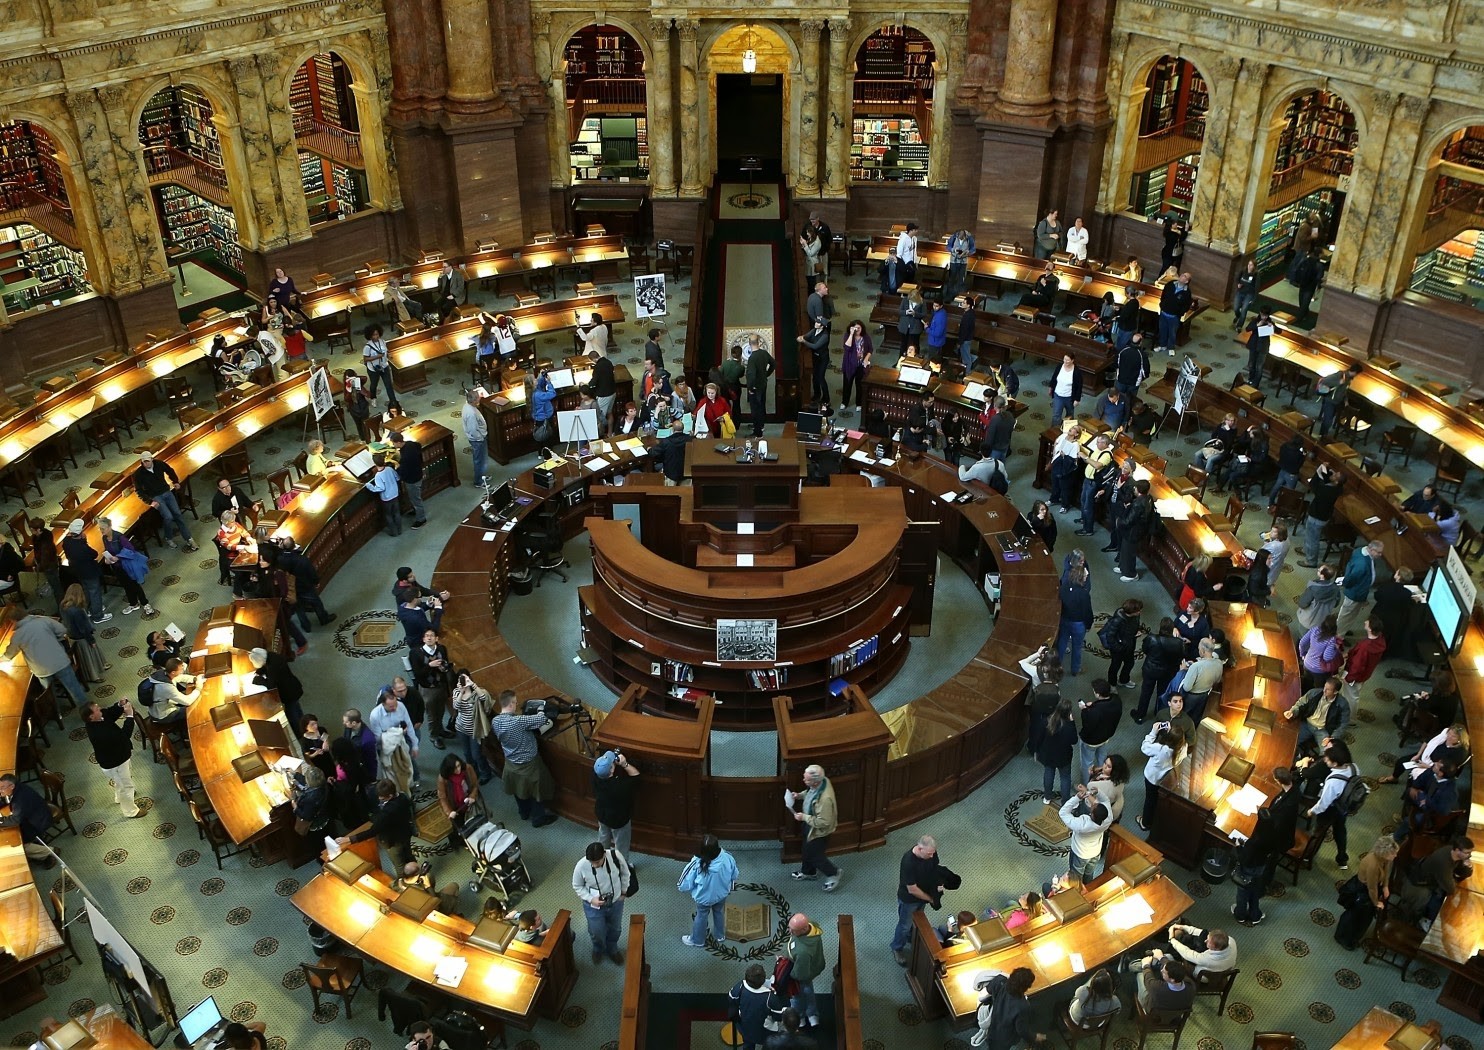 المكتبات في أمريكا .. تعرف على 6 من أعرق المكتبات حول العالم